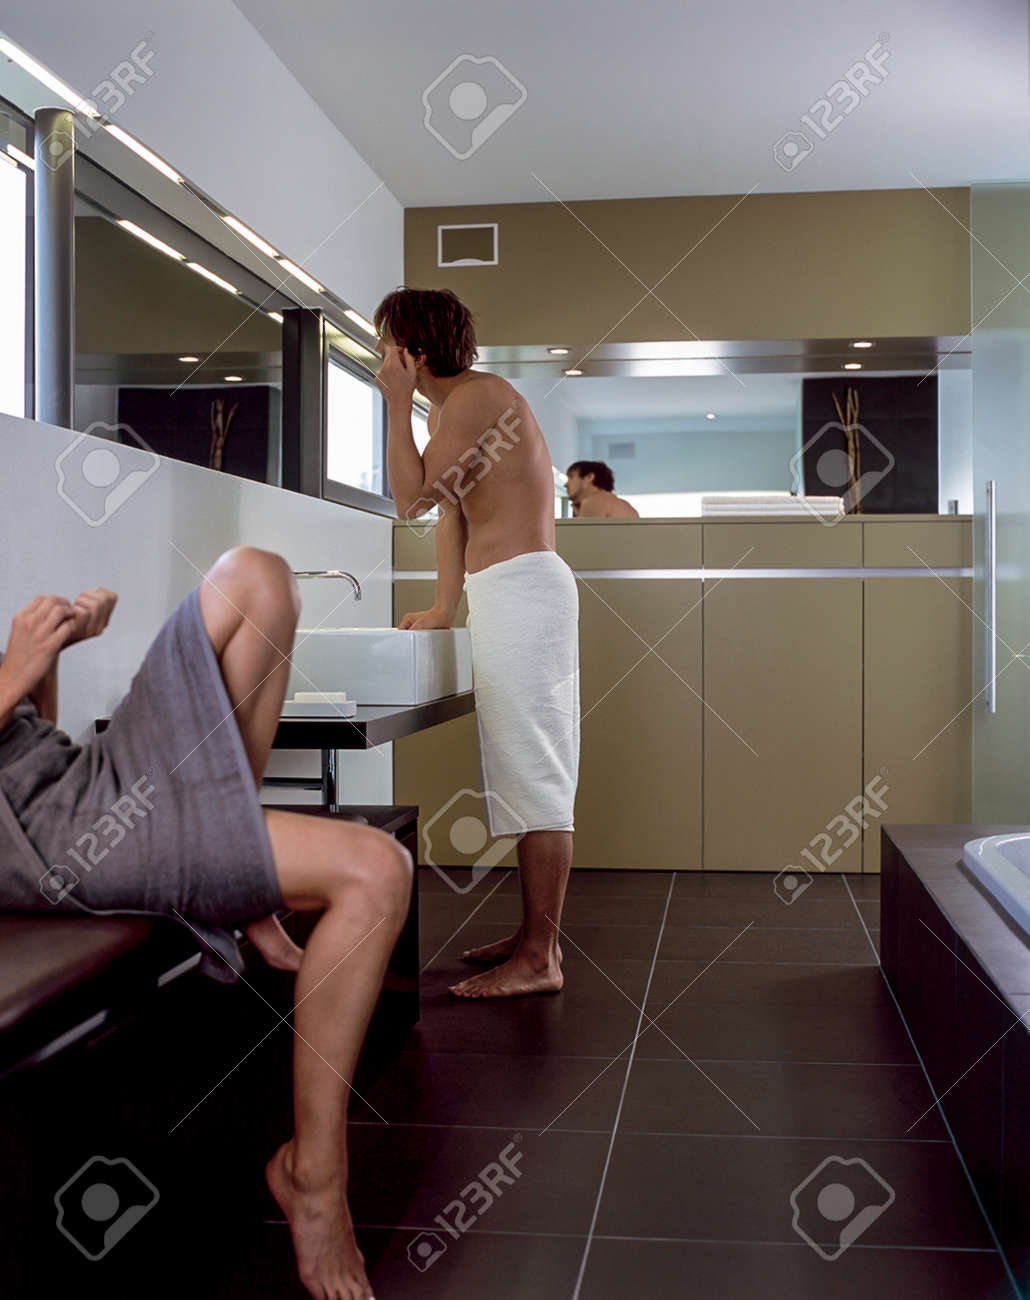 dorothy ennis add girlfriend in shower photo